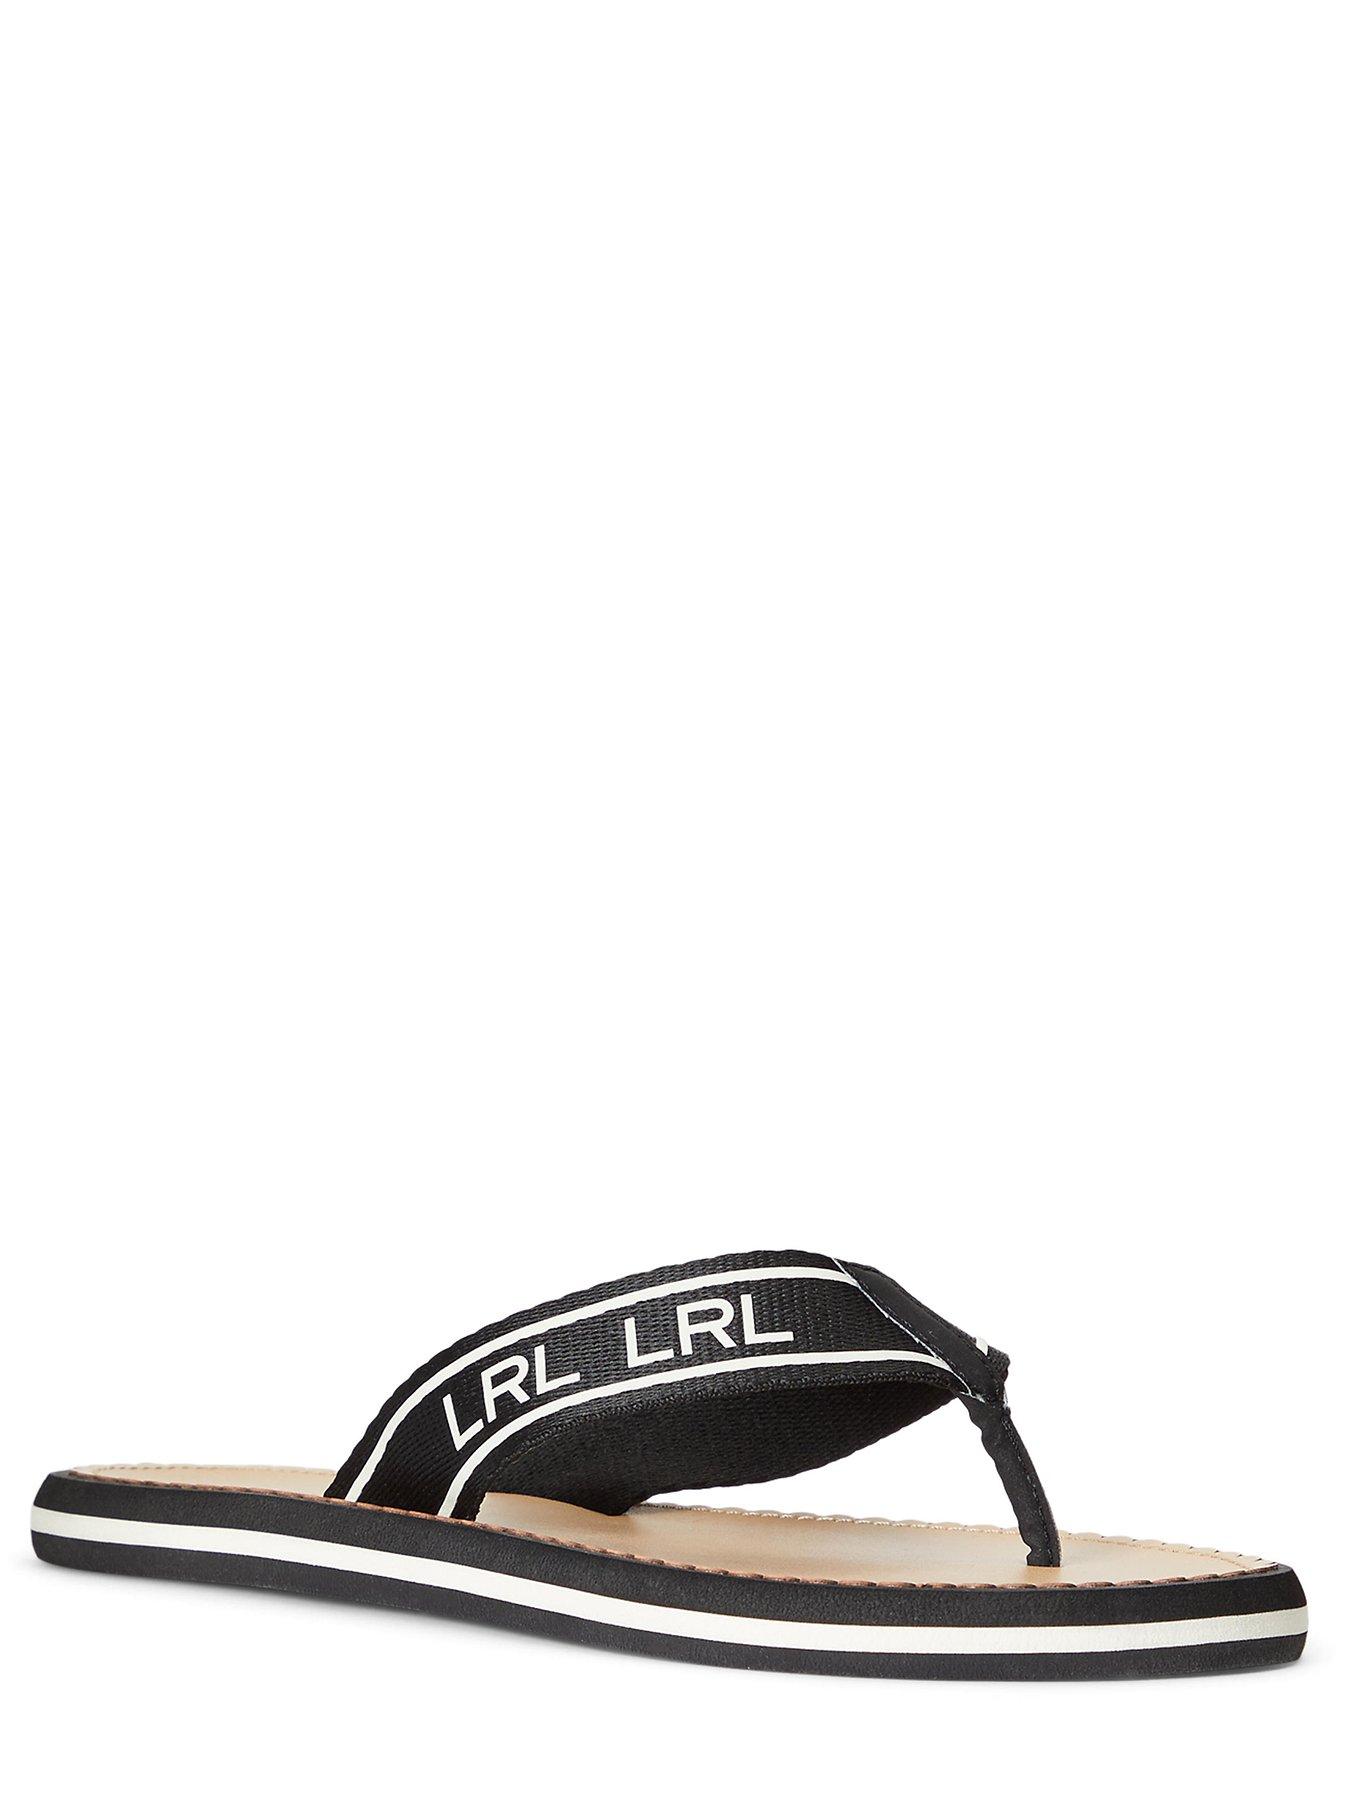 Lauren by Ralph Lauren Roxxy Flip Flop Sandals - Black/Vanilla 